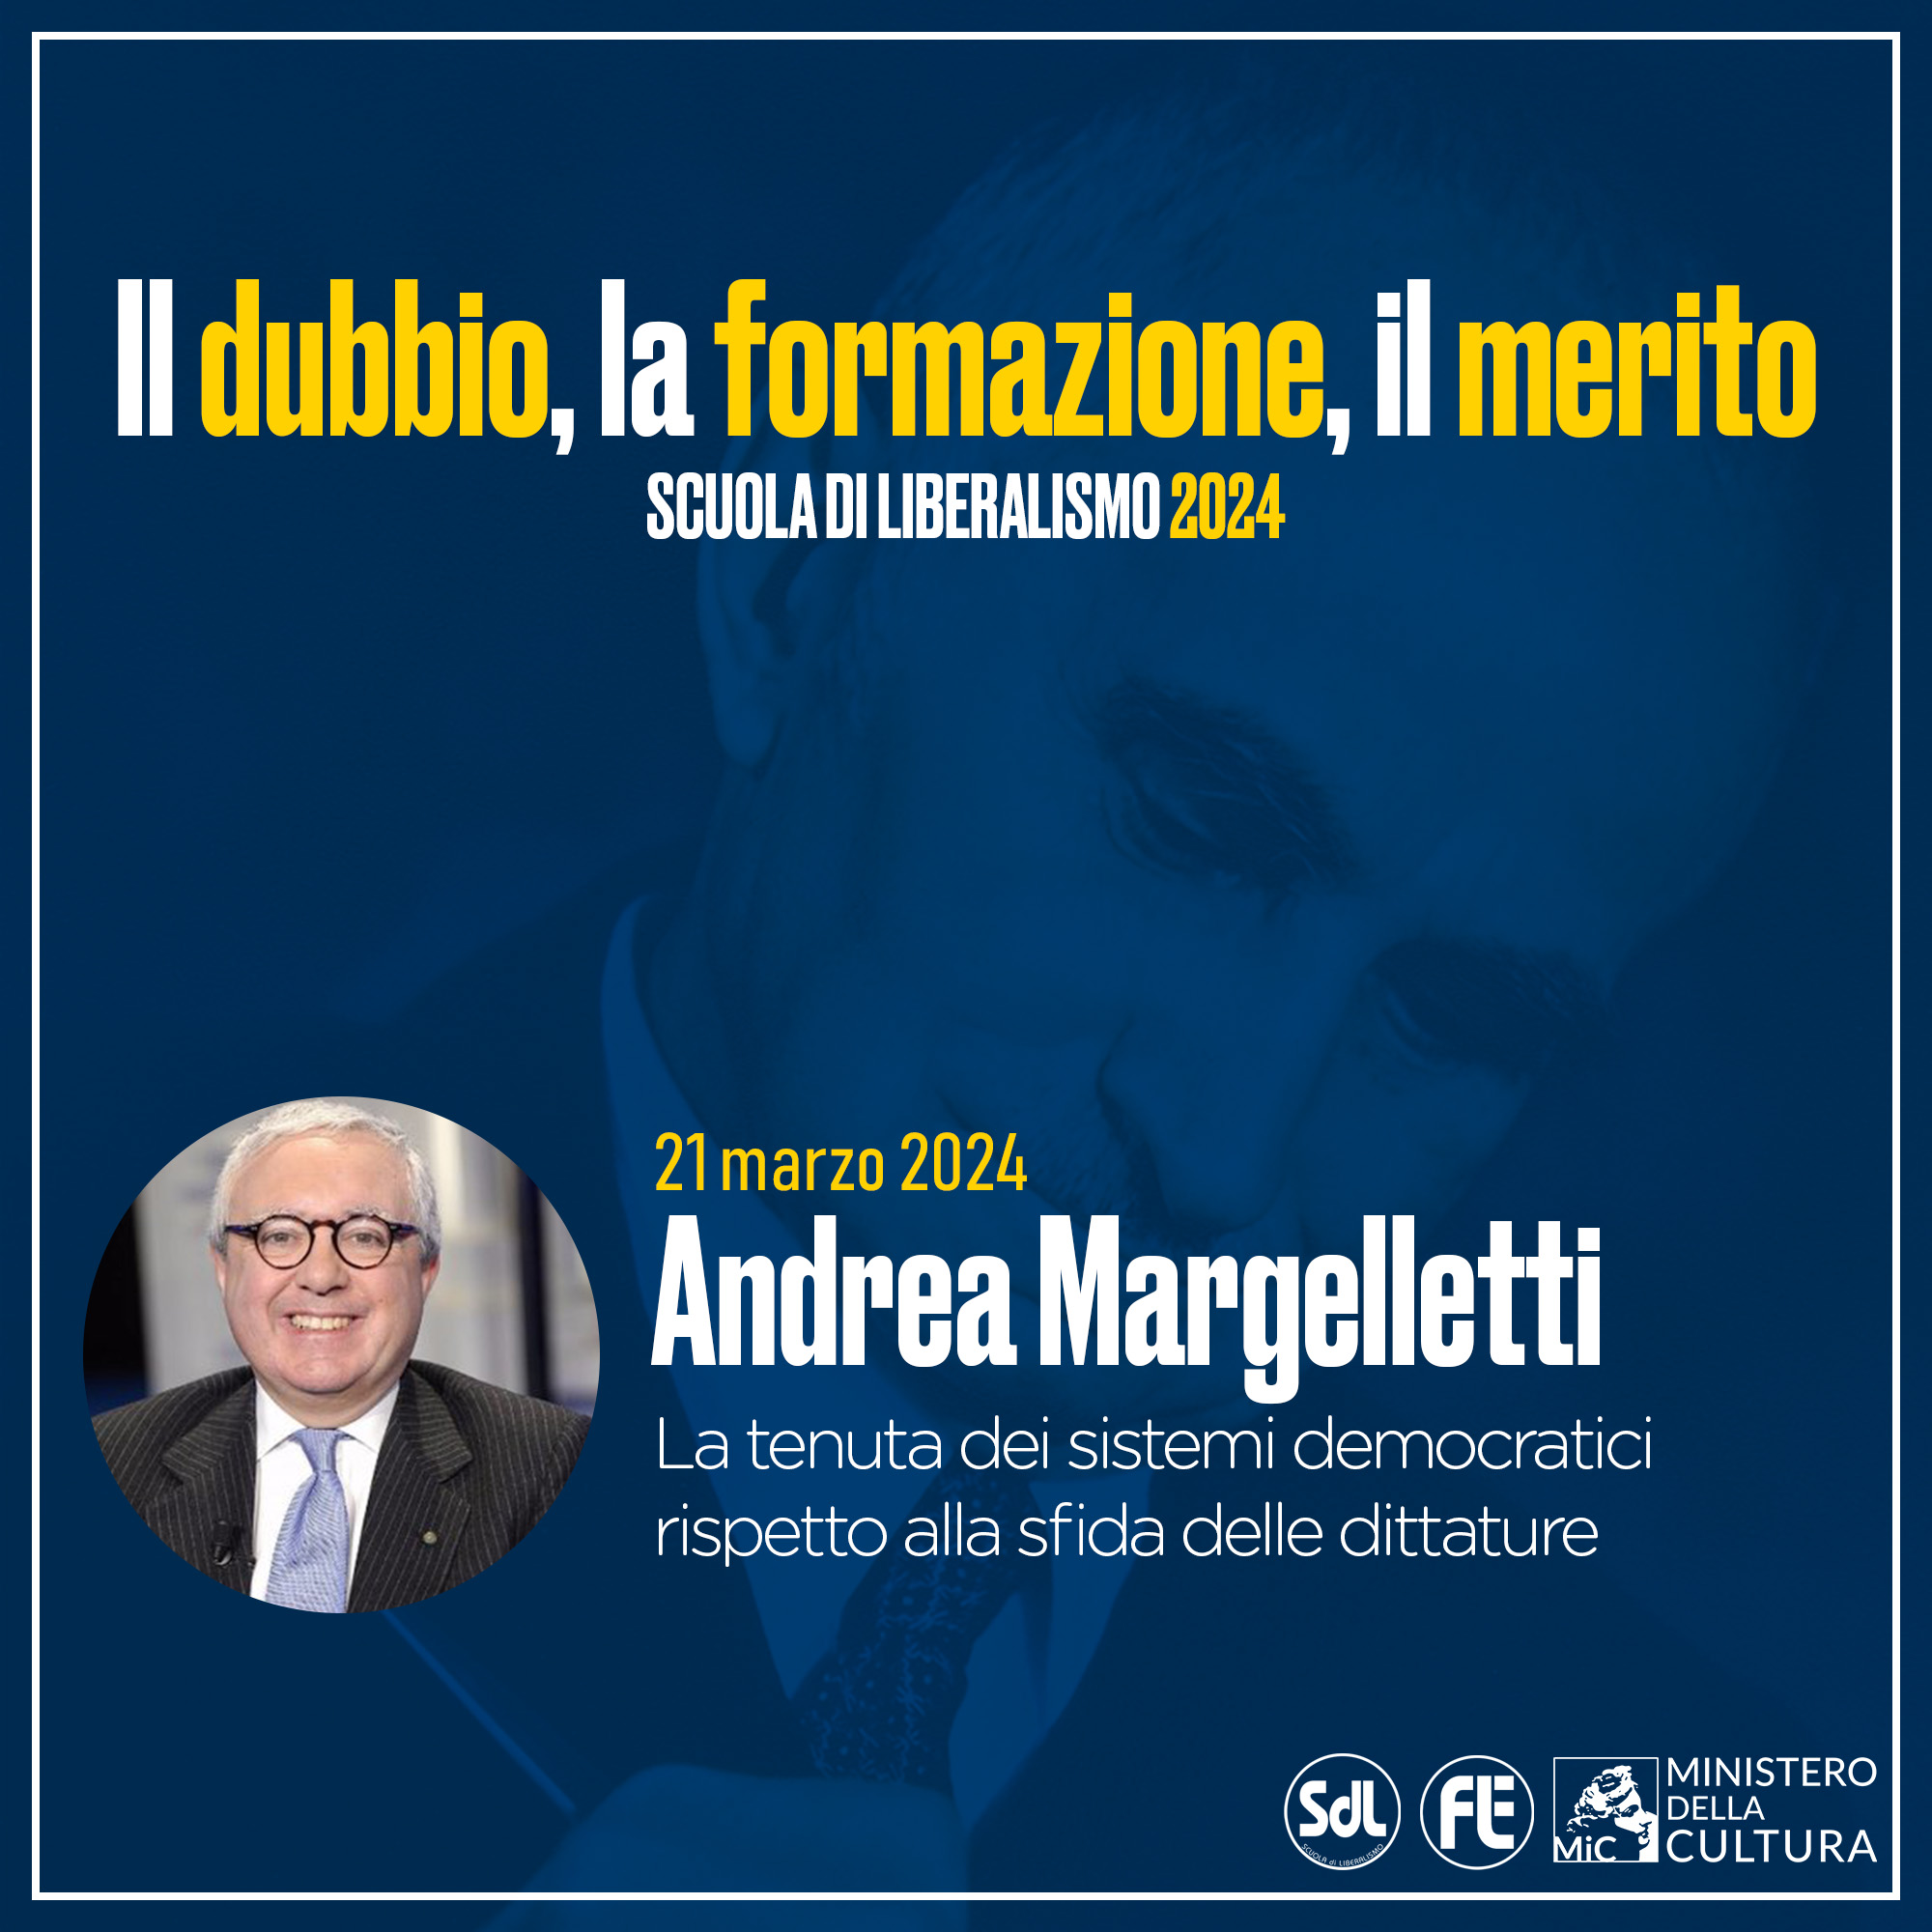 Scuola di Liberalismo 2024 – Andrea Margelletti, La tenuta dei sistemi democratici rispetto alla sfida delle dittature